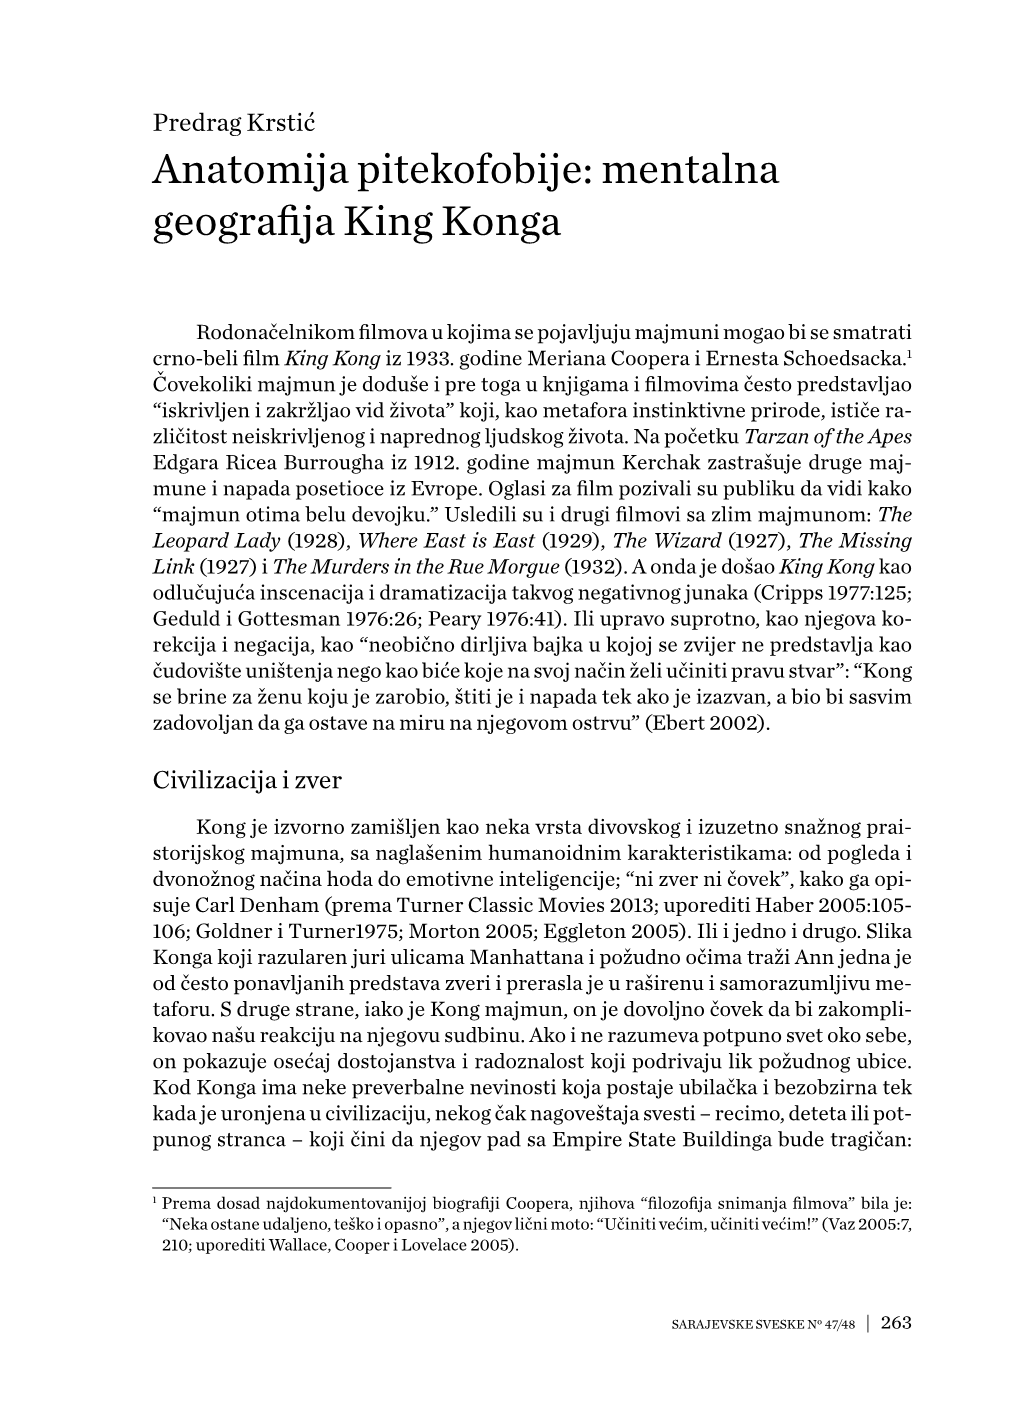 Anatomija Pitekofobije: Mentalna Geografija King Konga